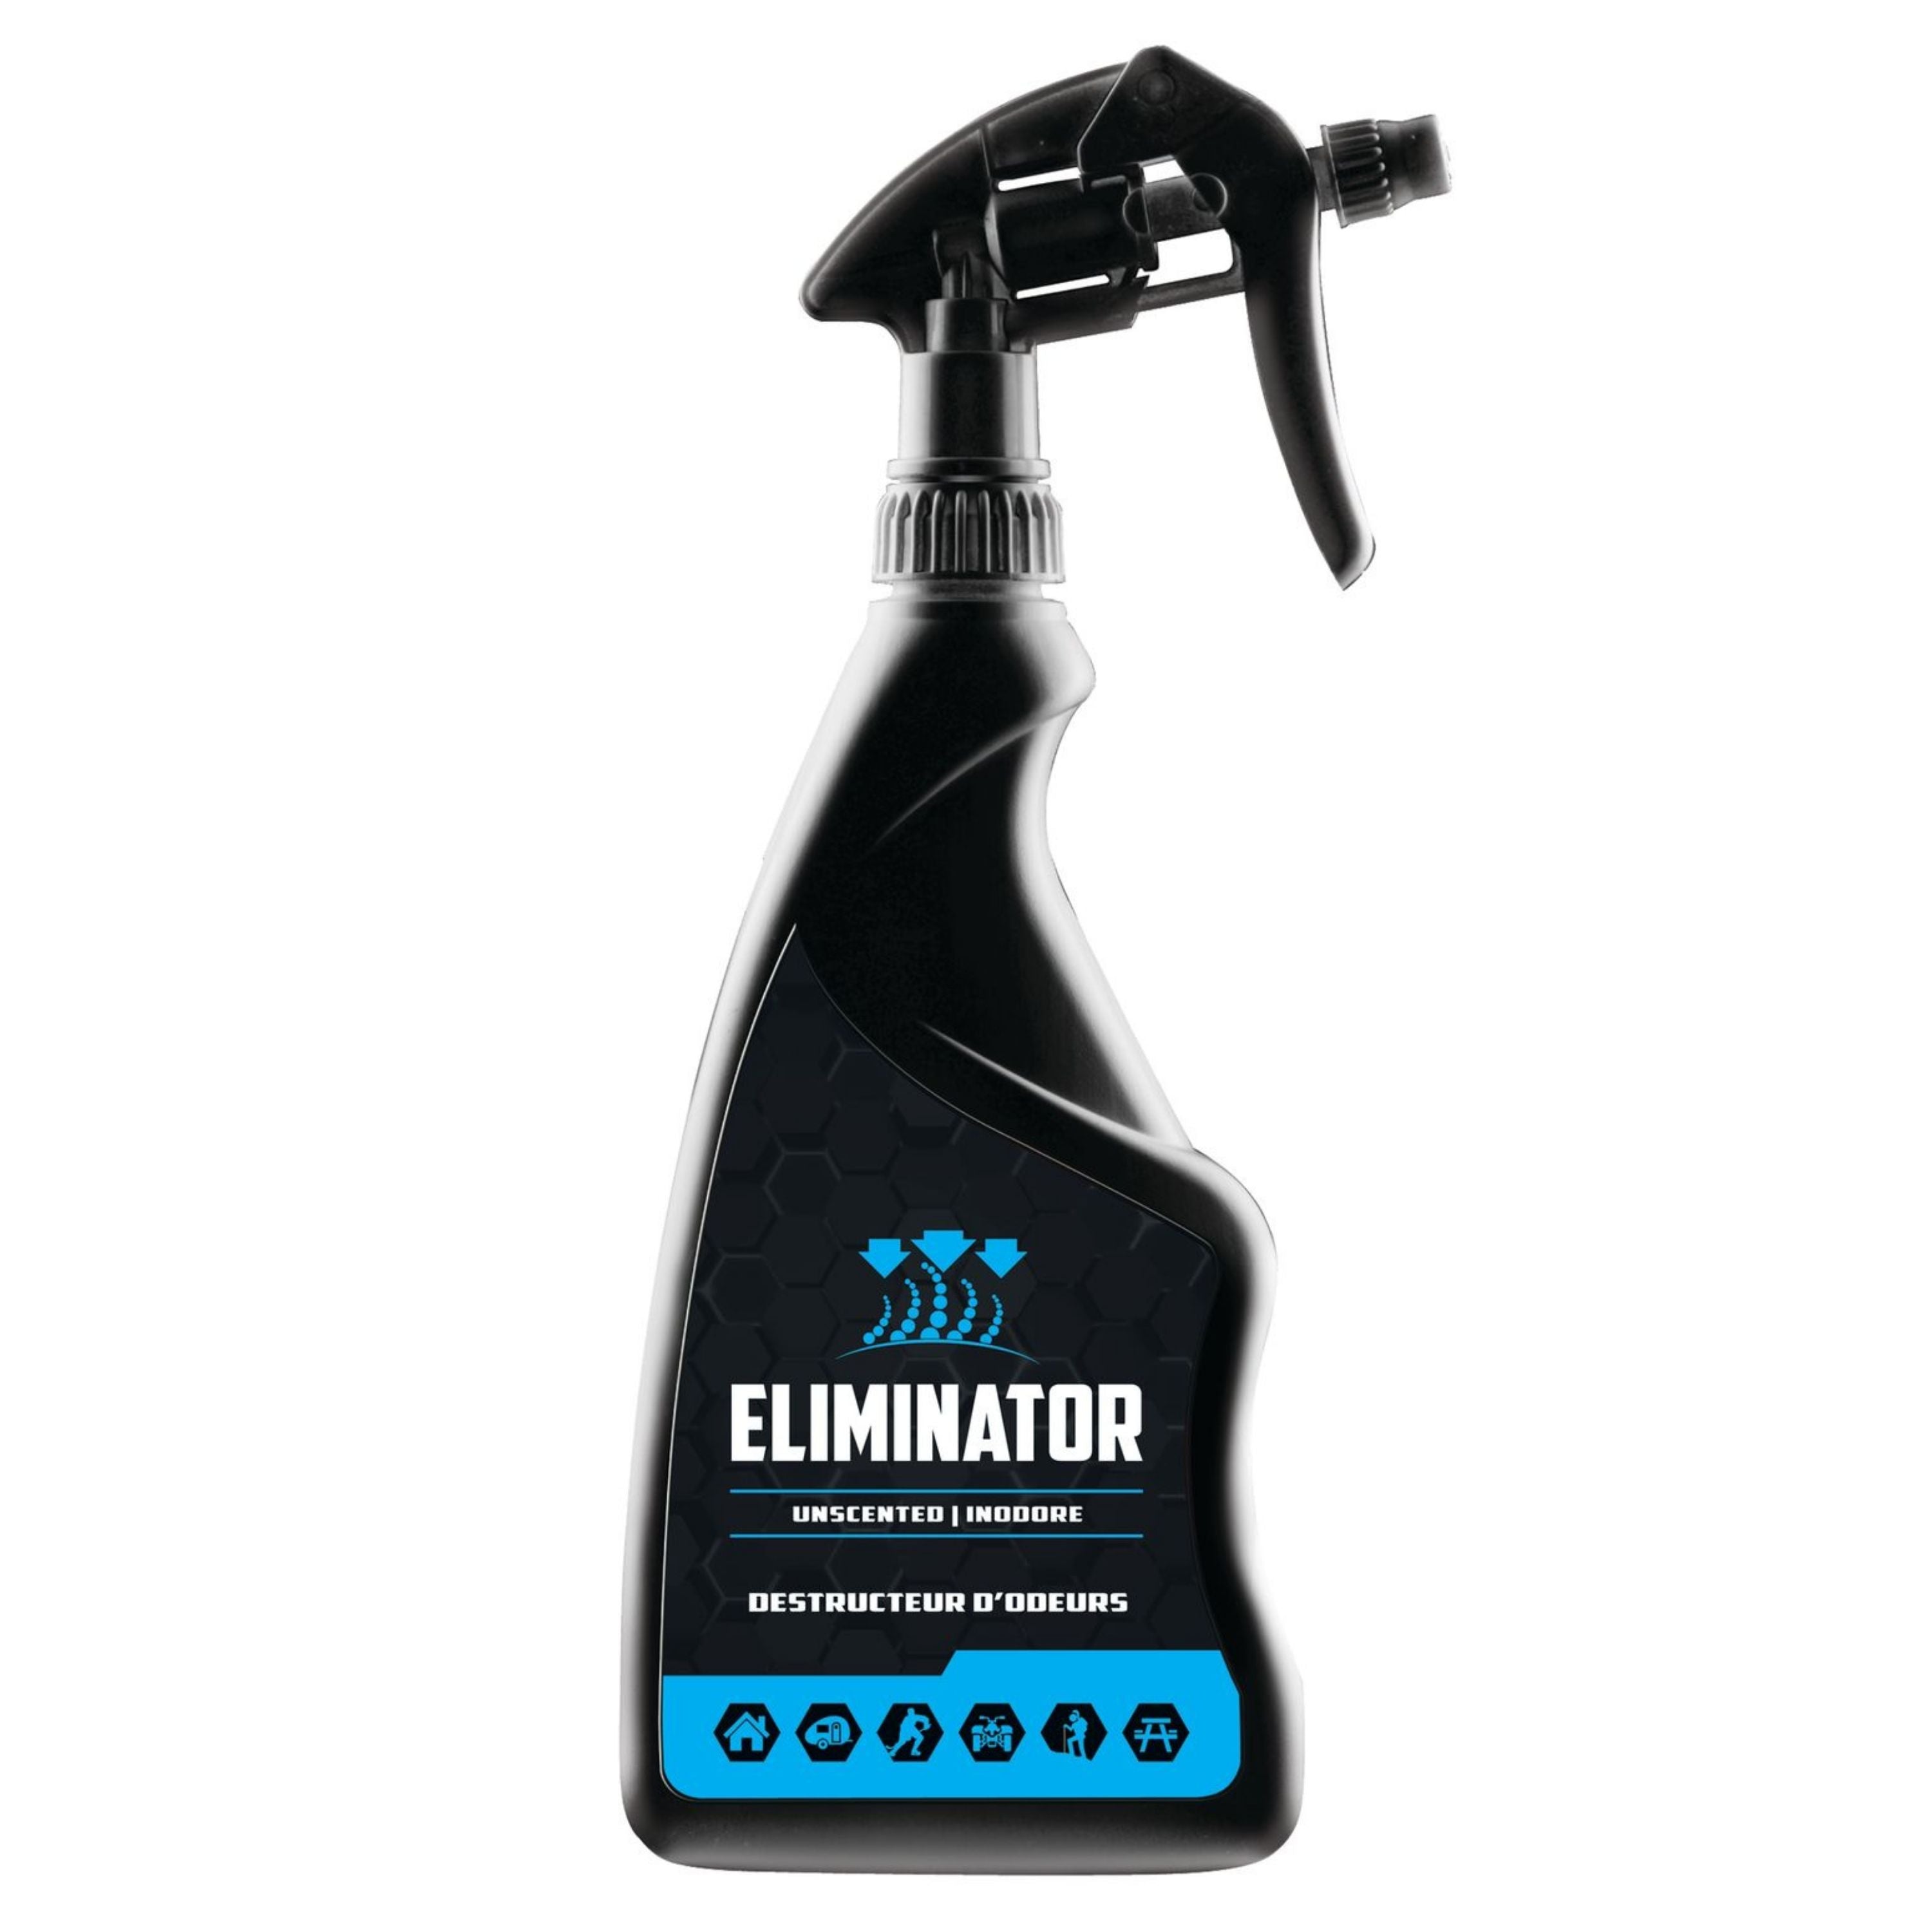 Éliminator- Destructeur d’odeur||Eliminator- Smell destroyer